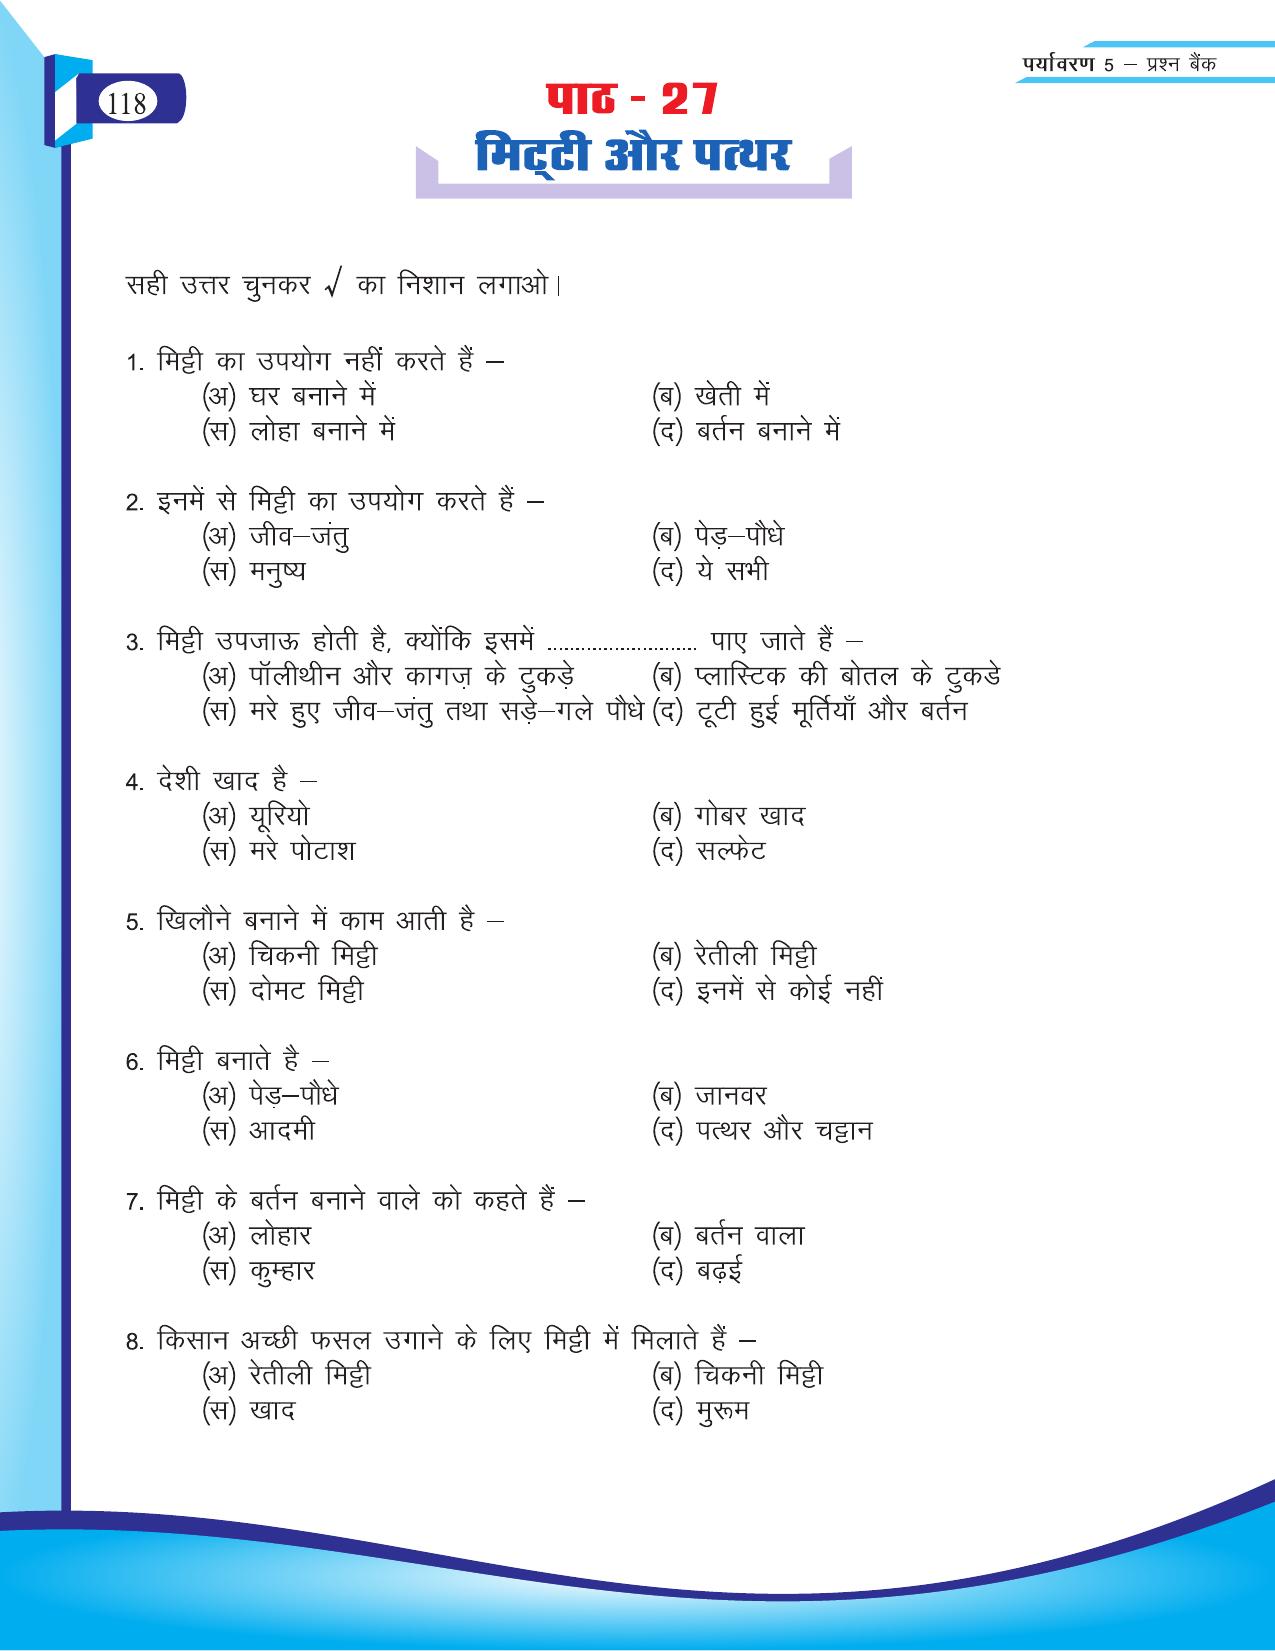 Chhattisgarh Board Class 5 EVS Question Bank 2015-16 - Page 44